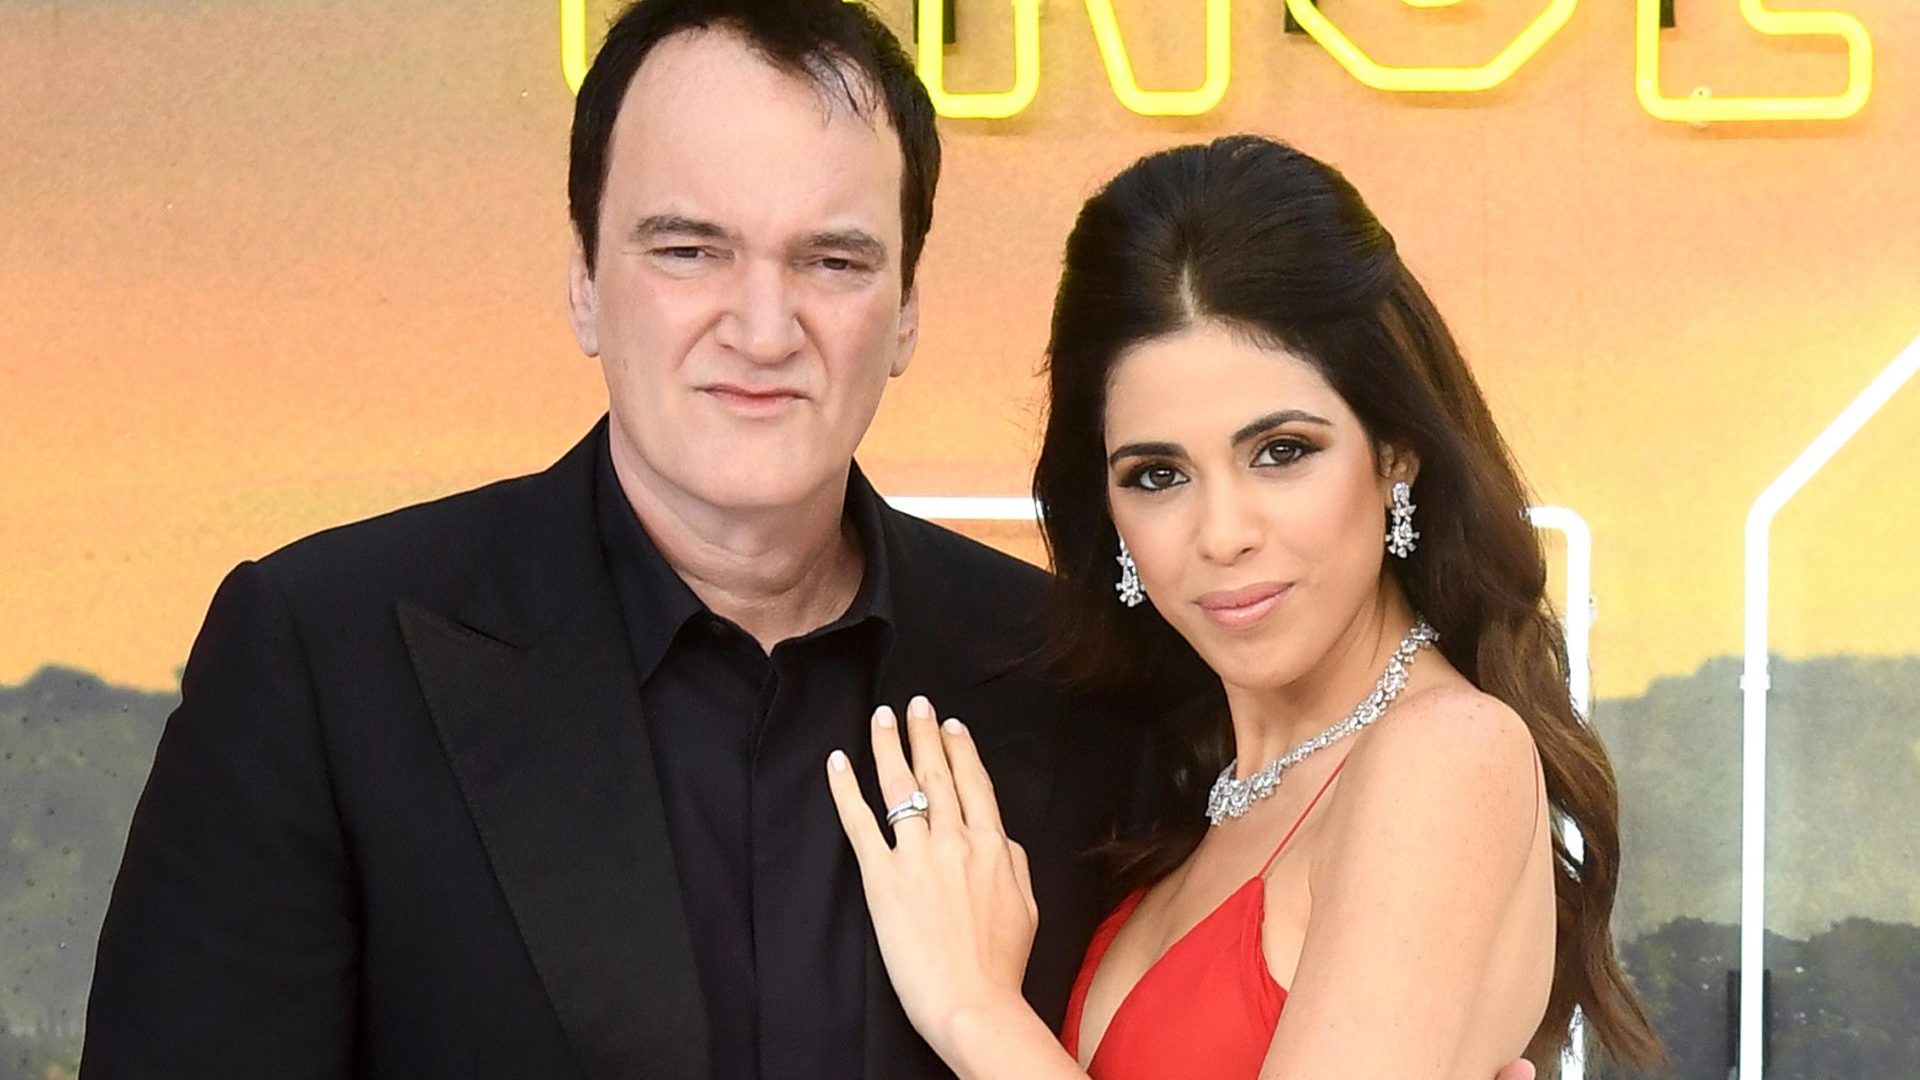 Quentin Tarantino e esposa esperam primeiro filho